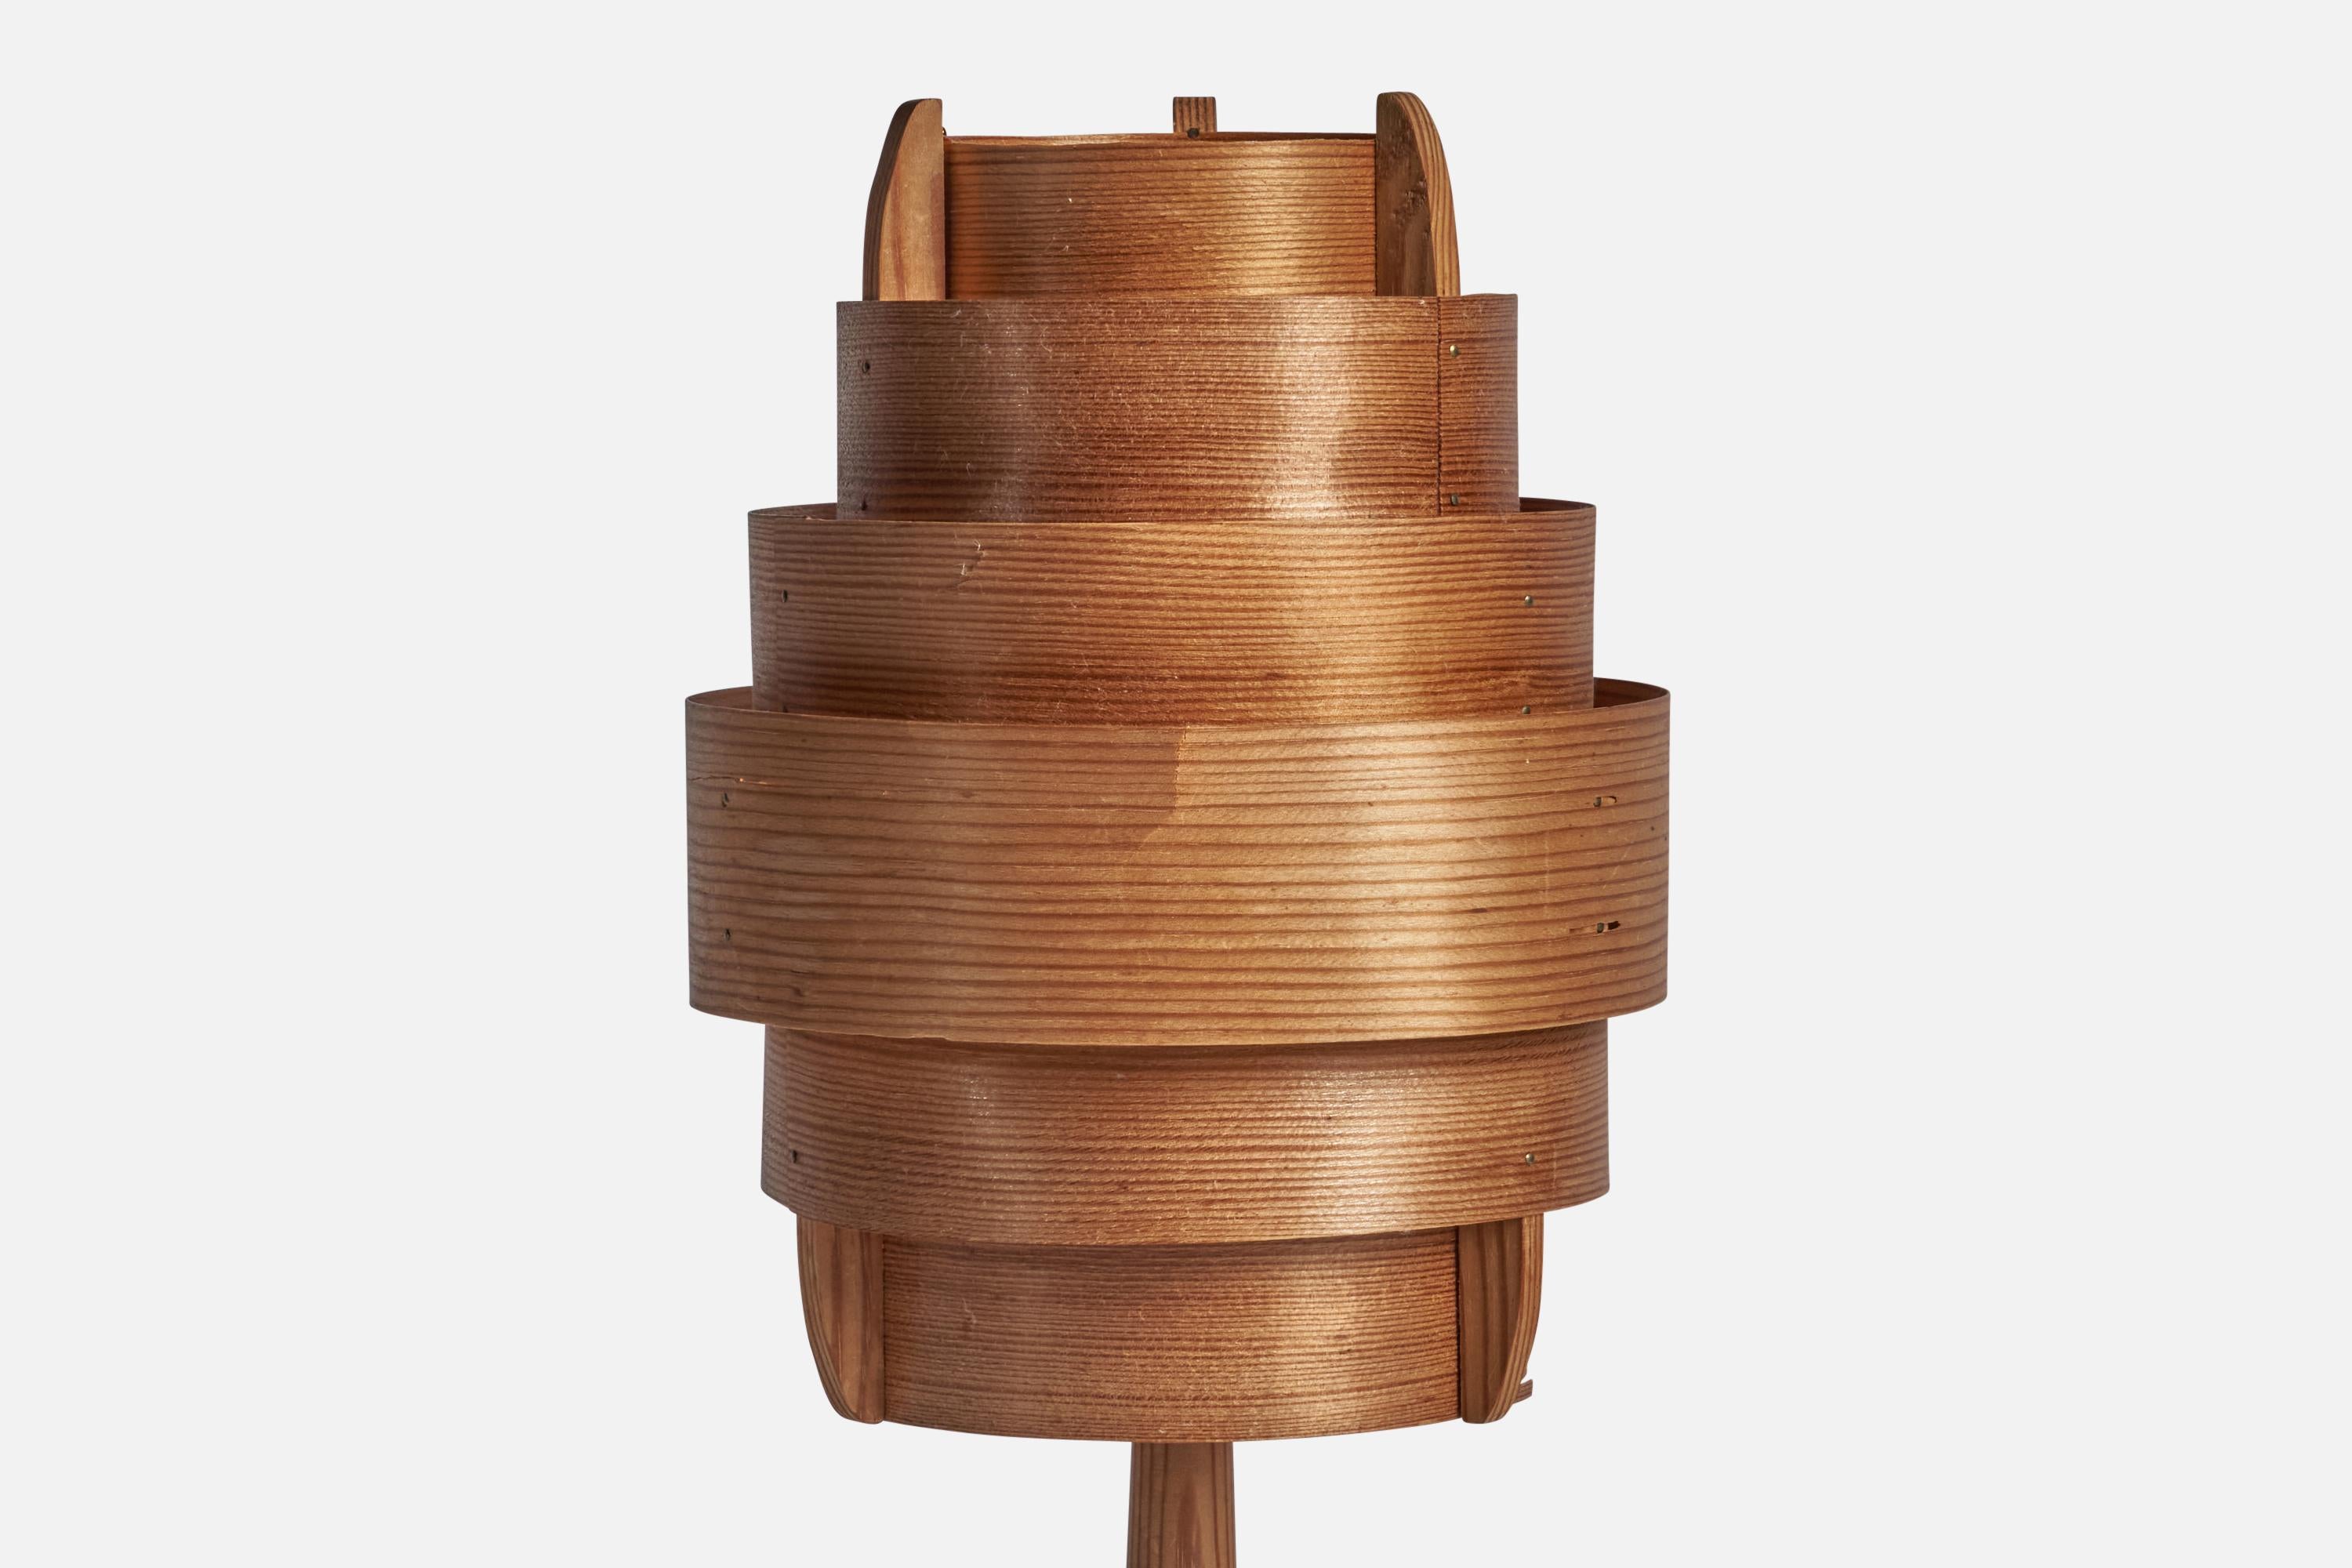 Lampe de table en pin et en pin-veneer moulé, conçue et produite par Hans-Agne Jakobsson, Agnes, Suède, années 1970.

Dimensions globales (pouces) : 16.25